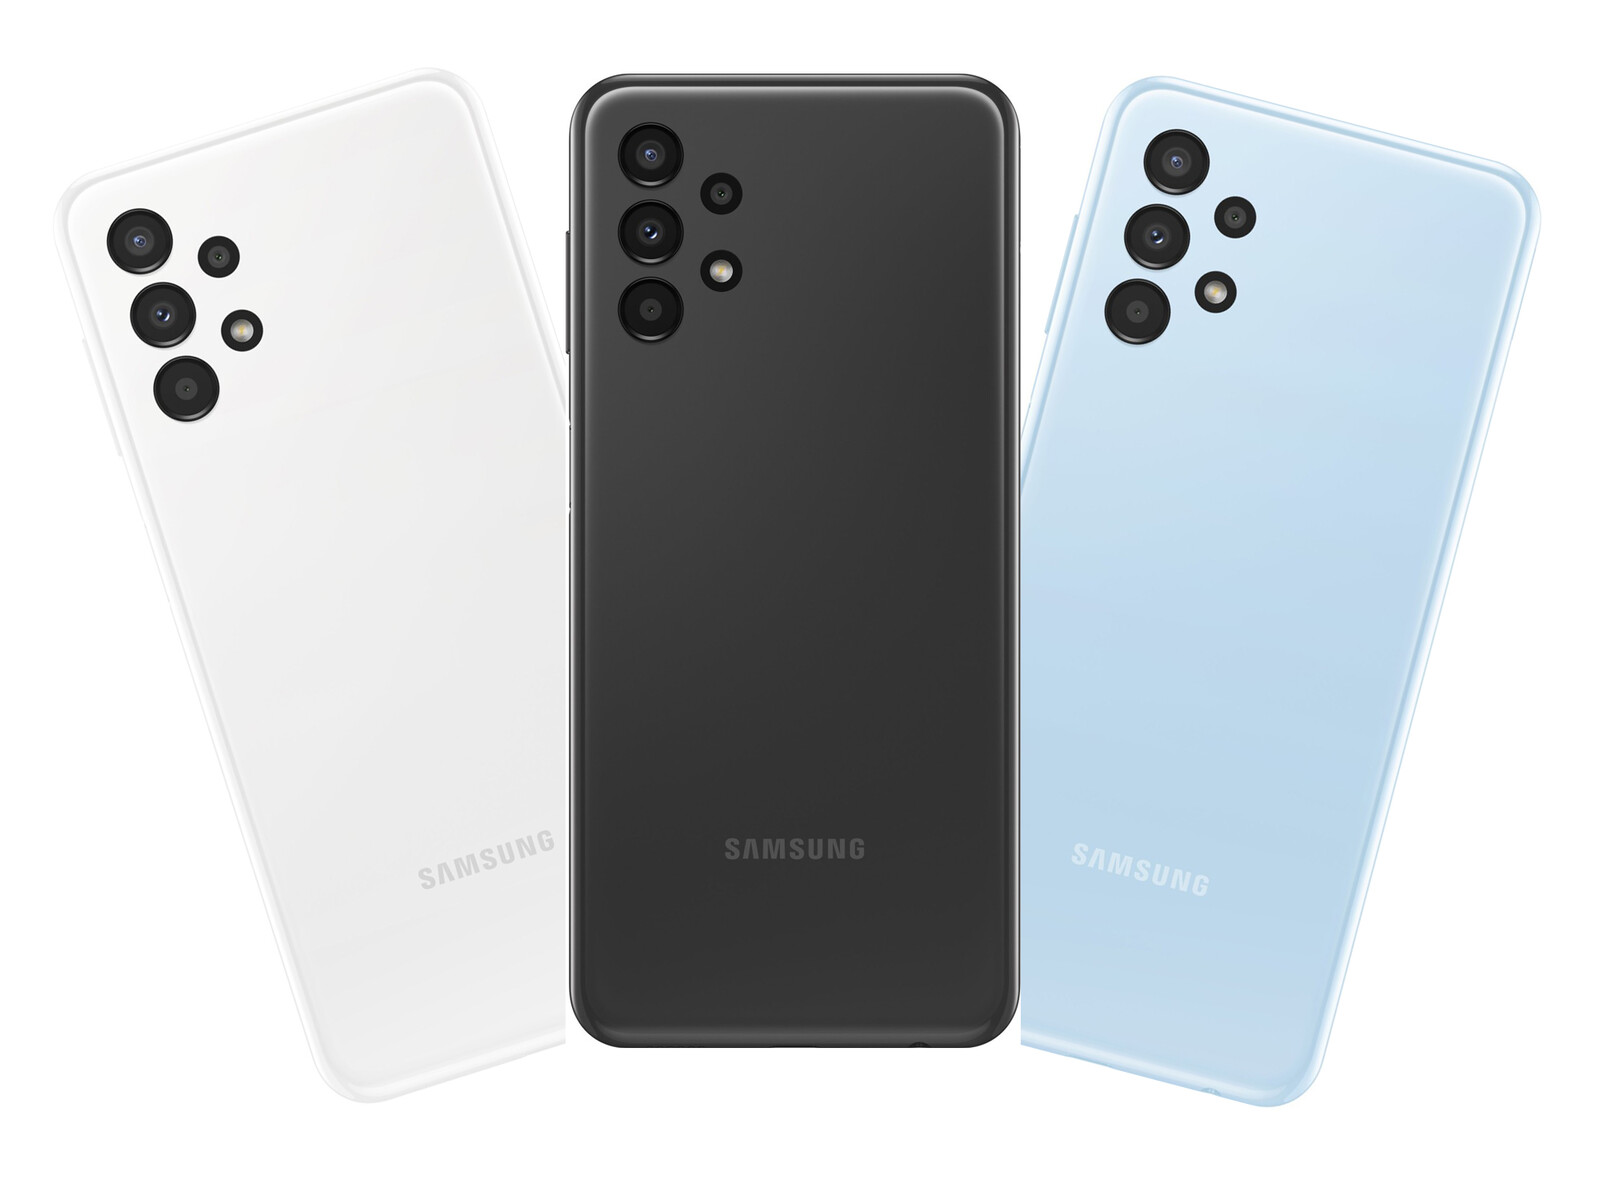 Samsung Galaxy A Series - Đến với dòng sản phẩm Samsung Galaxy A Series, bạn sẽ không còn phải lo lắng về hiệu suất và chất lượng. Sản phẩm được trang bị công nghệ tiên tiến, thiết kế đẹp và tính năng đa dạng, giúp bạn trải nghiệm tốt nhất trong cuộc sống hàng ngày. Đừng chần chừ mà hãy khám phá ngay!